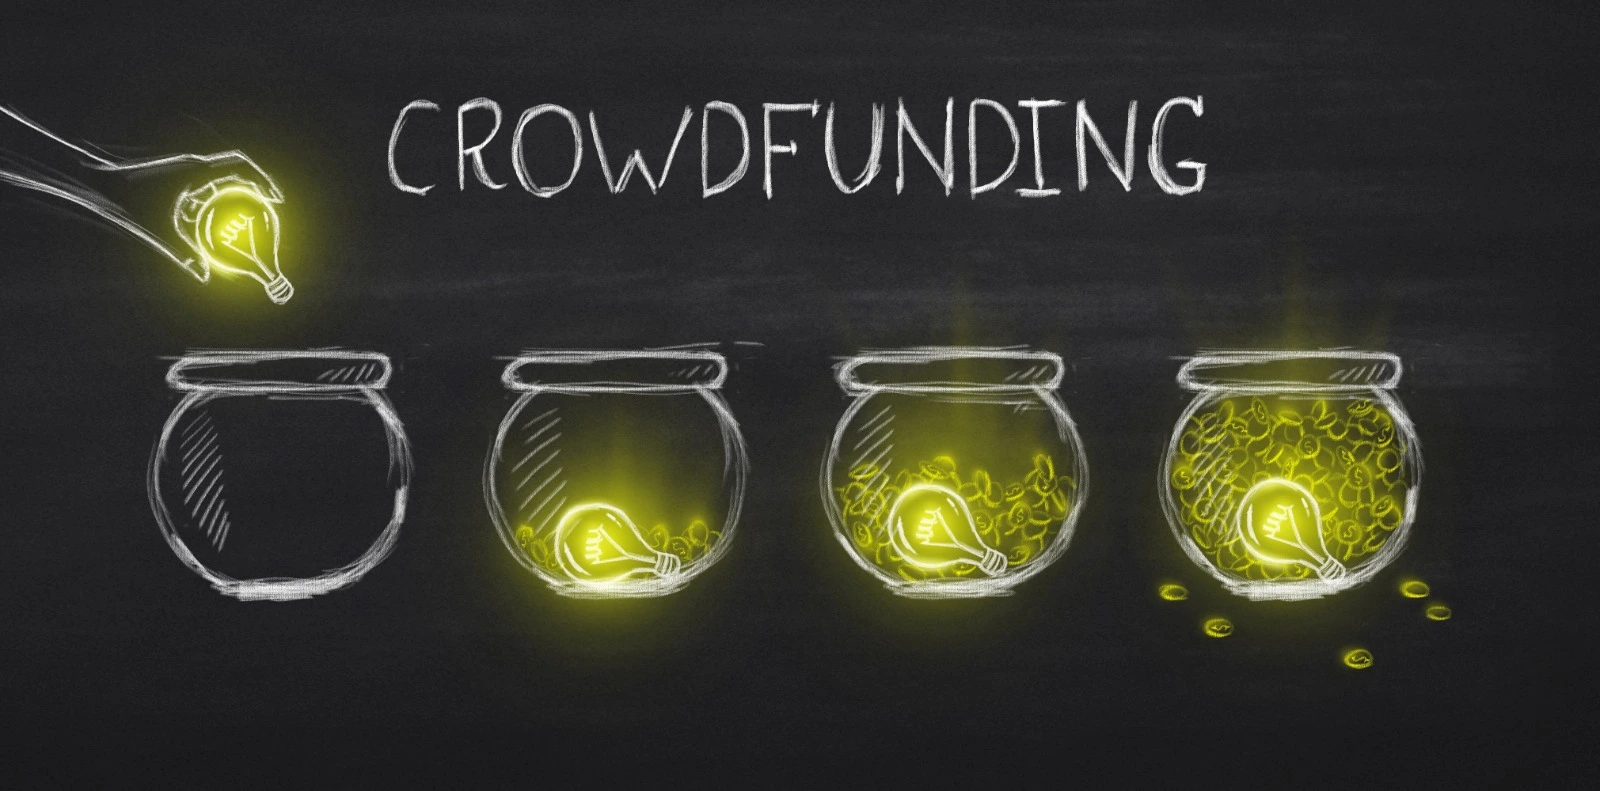 tablero de tiza mostrando la palabra "crowdfunding" y dibujos de vasijas